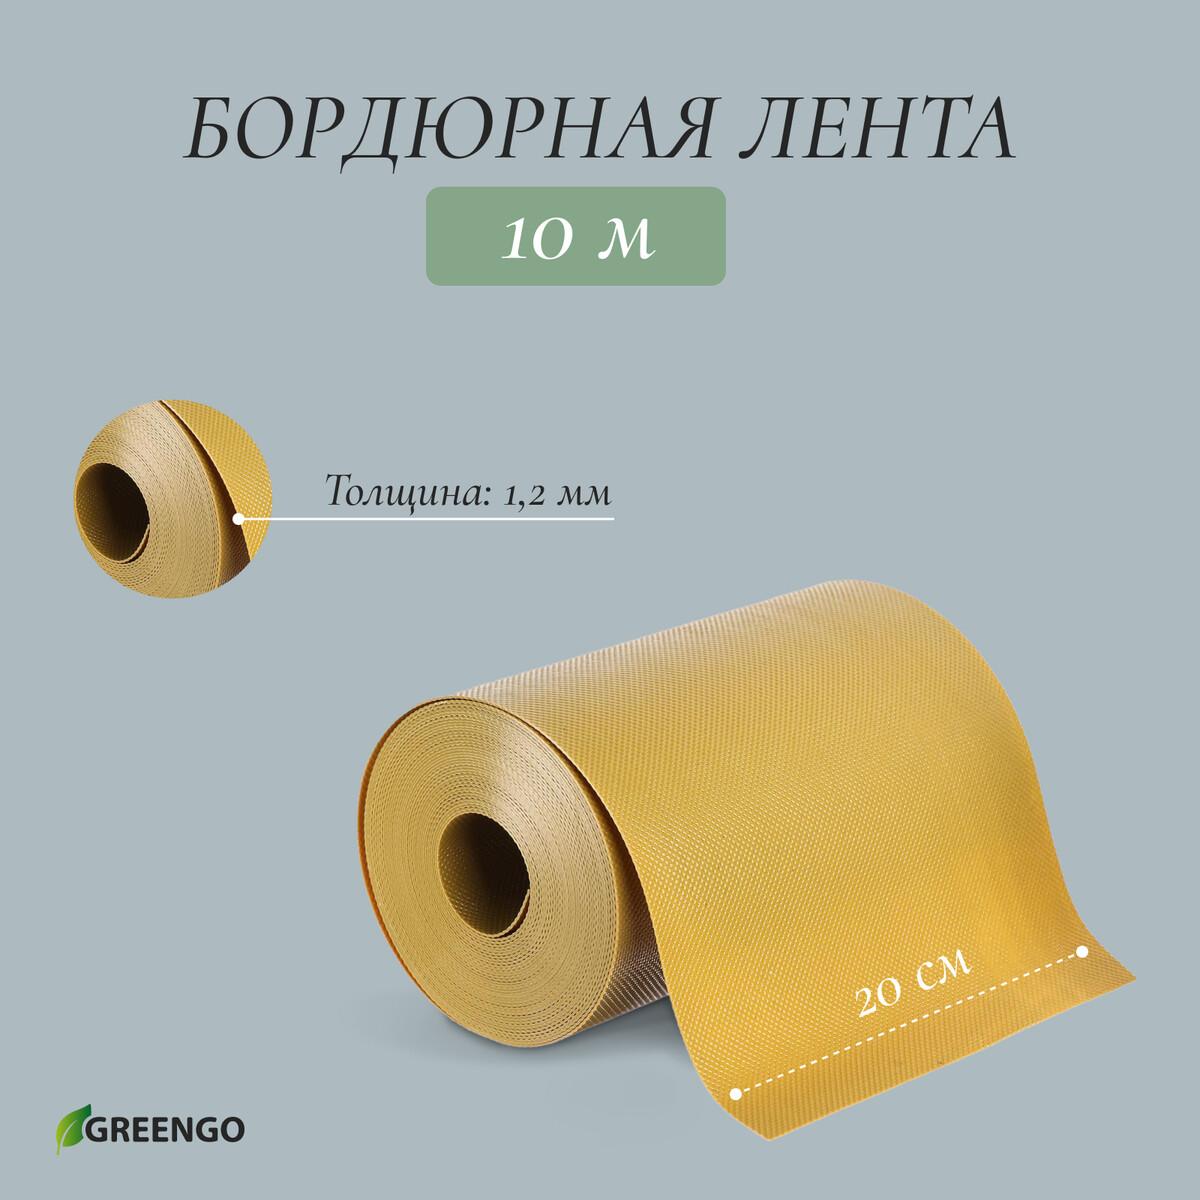 Лента бордюрная, 0.2 × 10 м, толщина 1.2 мм, пластиковая, желтая, greengo лента бордюрная 0 15 × 9 м толщина 1 2 мм пластиковая фигурная коричневая